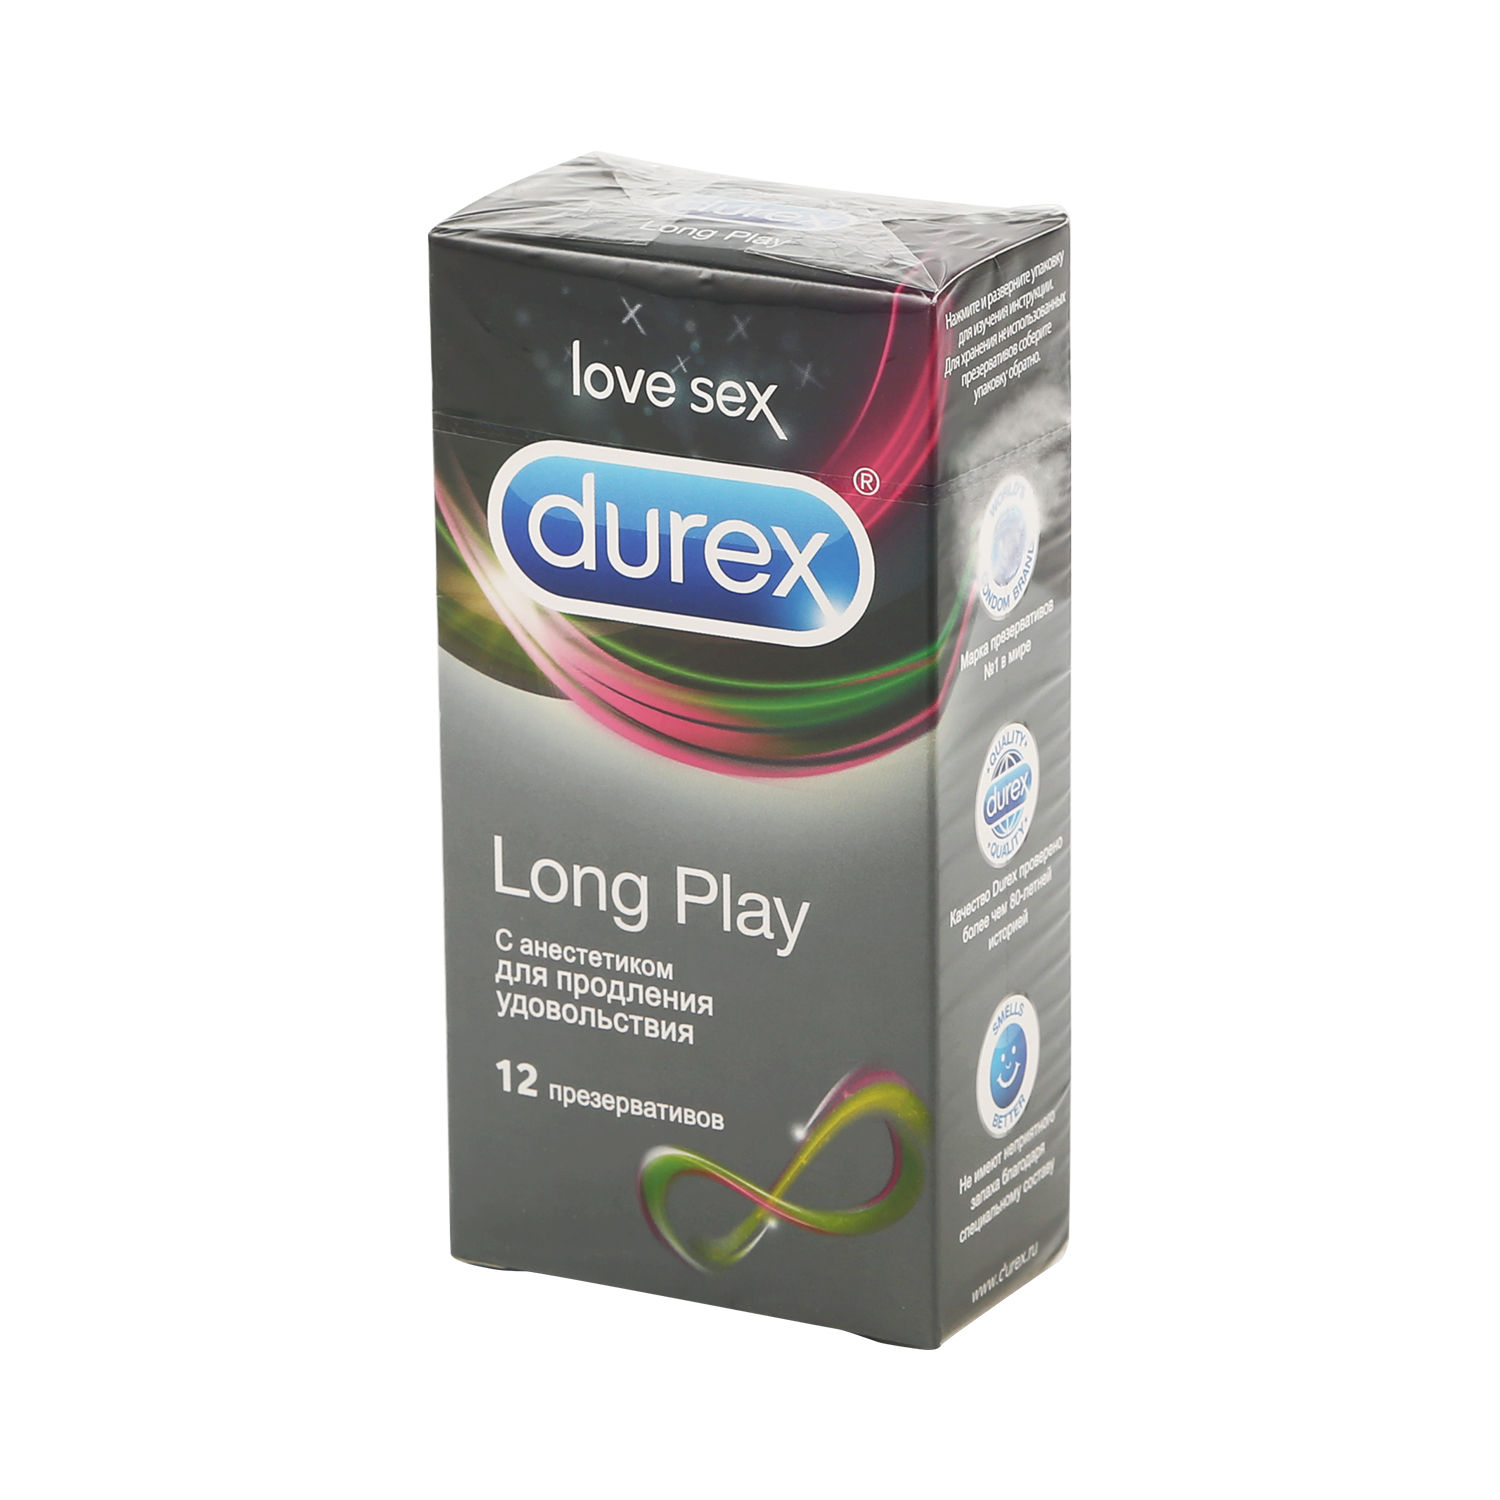 Дюрекс презервативы Лонг Плей №12